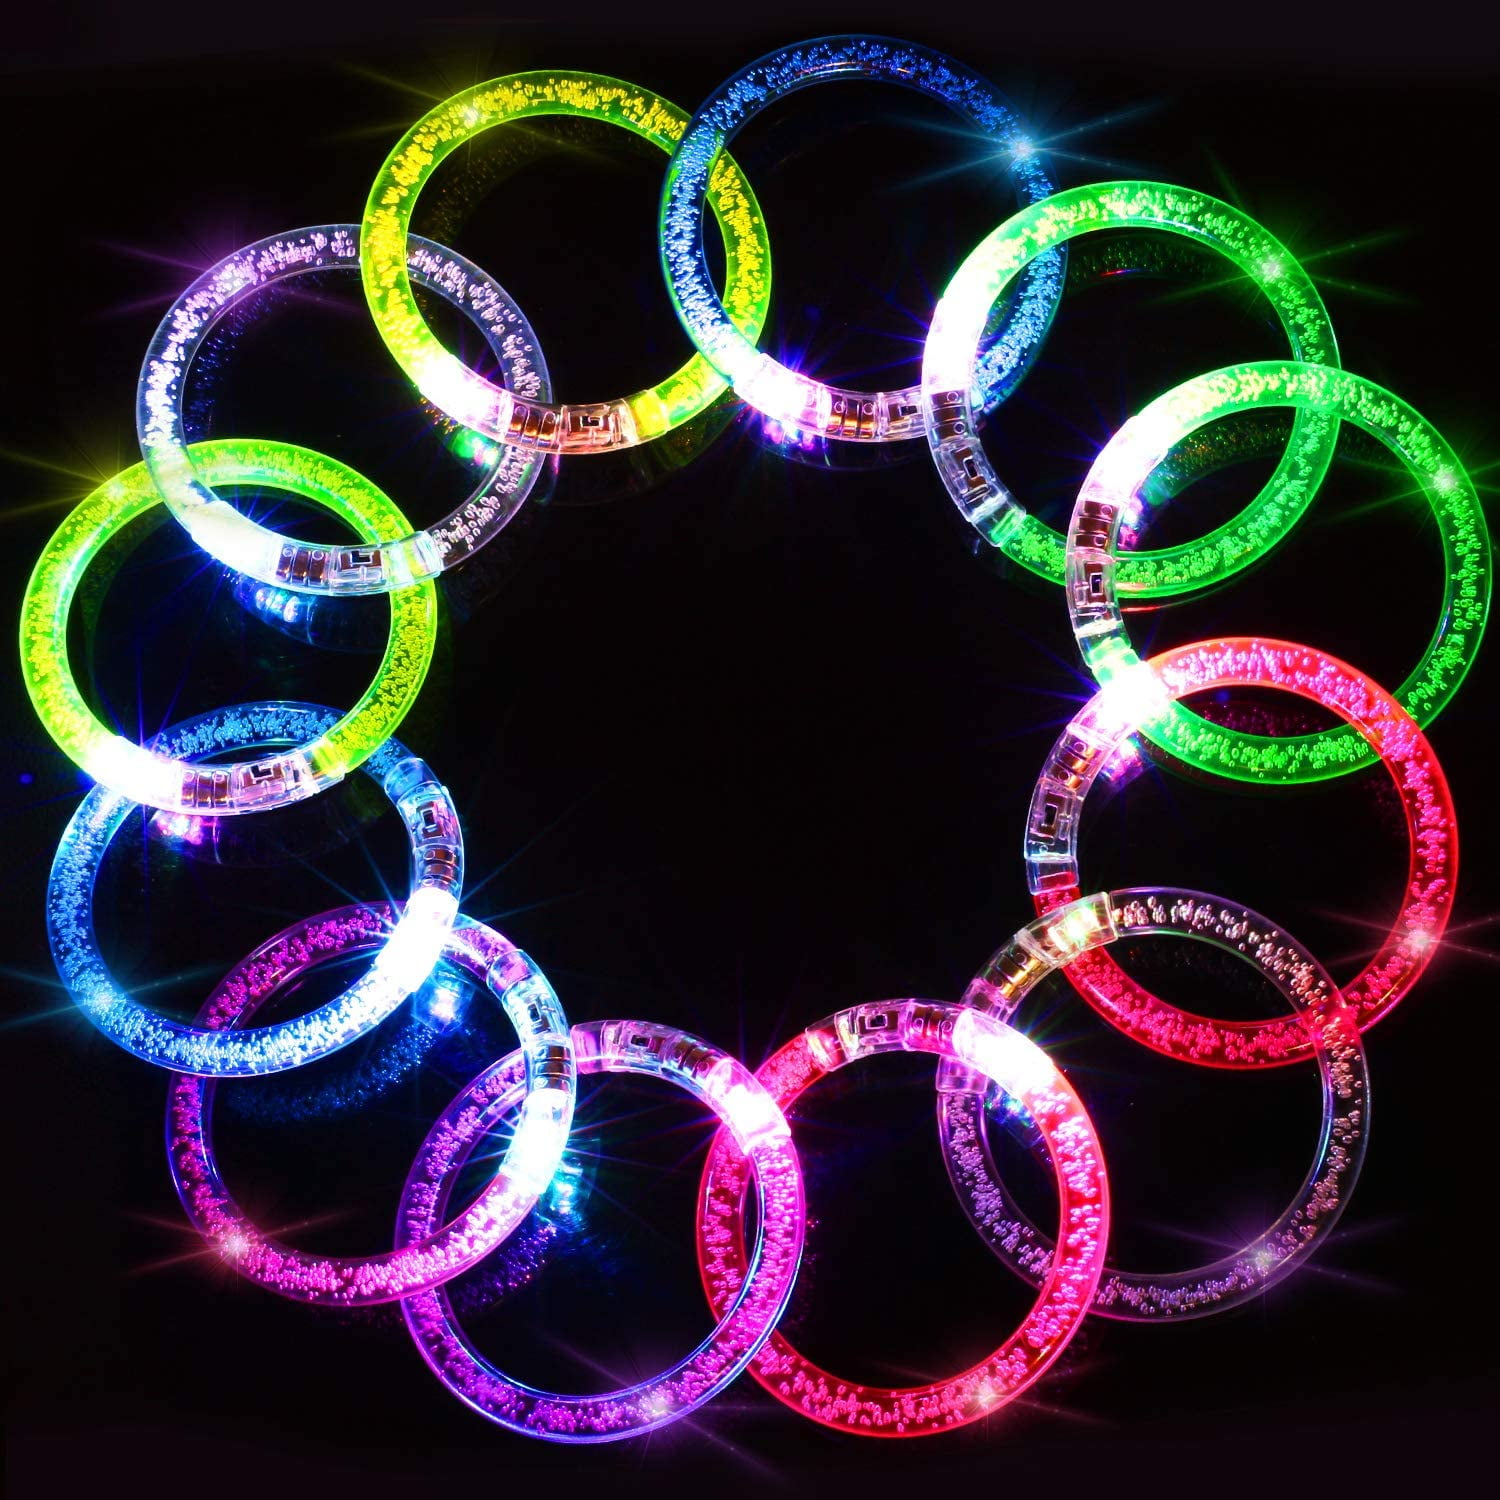  Vetory 50Pcs Glow Bracelets,LED Bracelets Light up